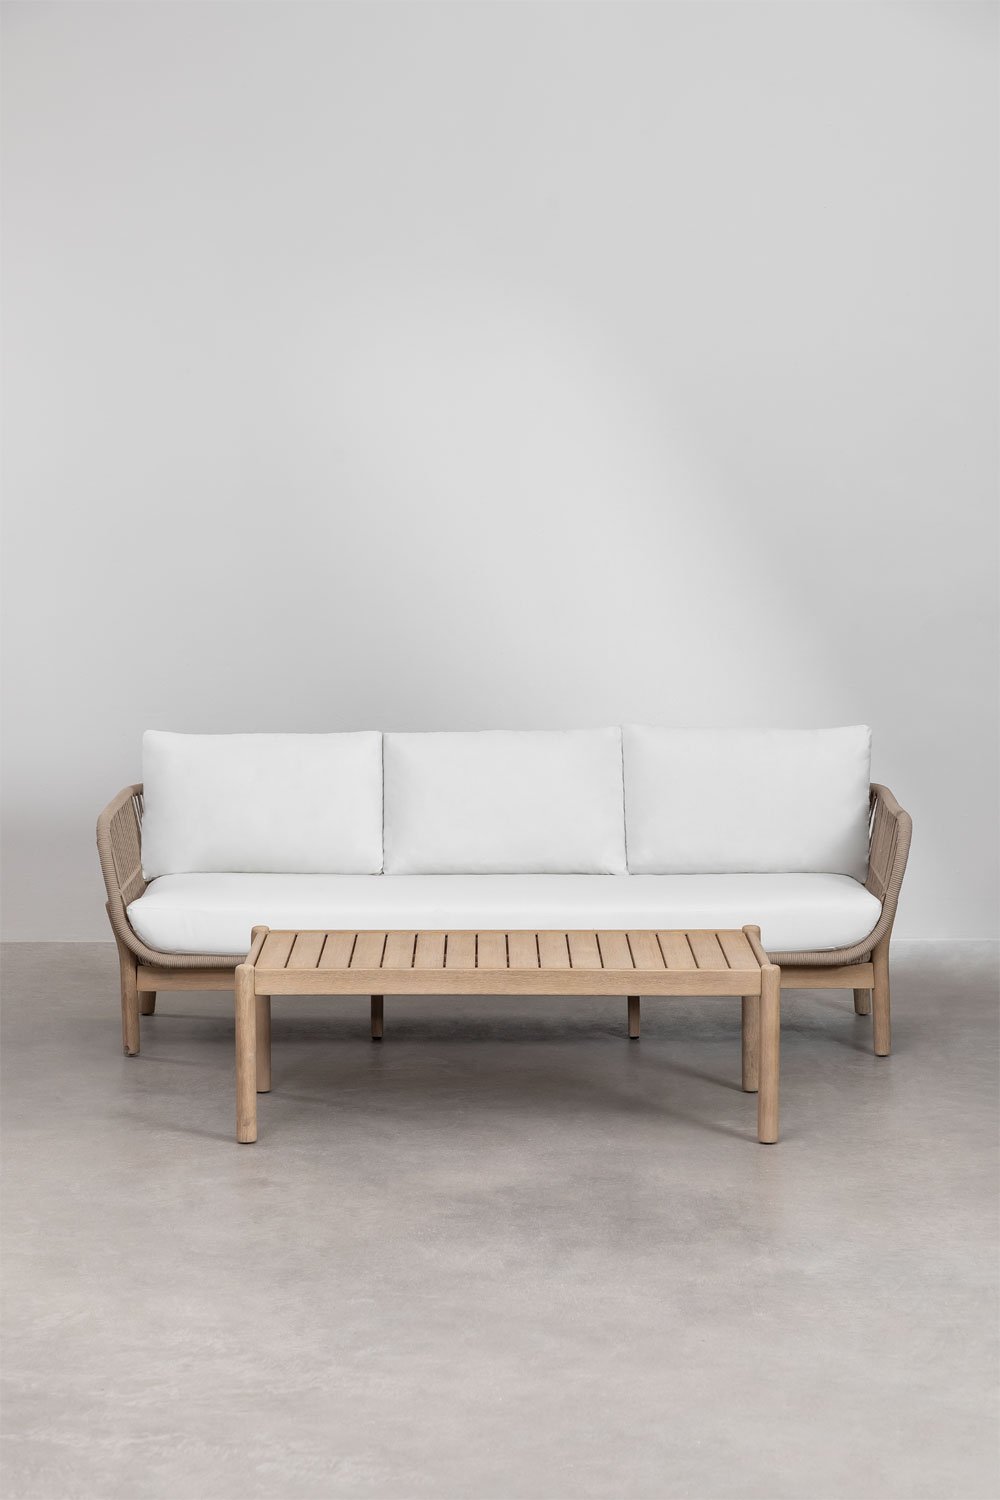 Zestaw ogrodowy Karvia 3-osobowy i prostokątny stolik kawowy z aluminium i drewna akacjowego (120x60 cm), obrazek w galerii 1